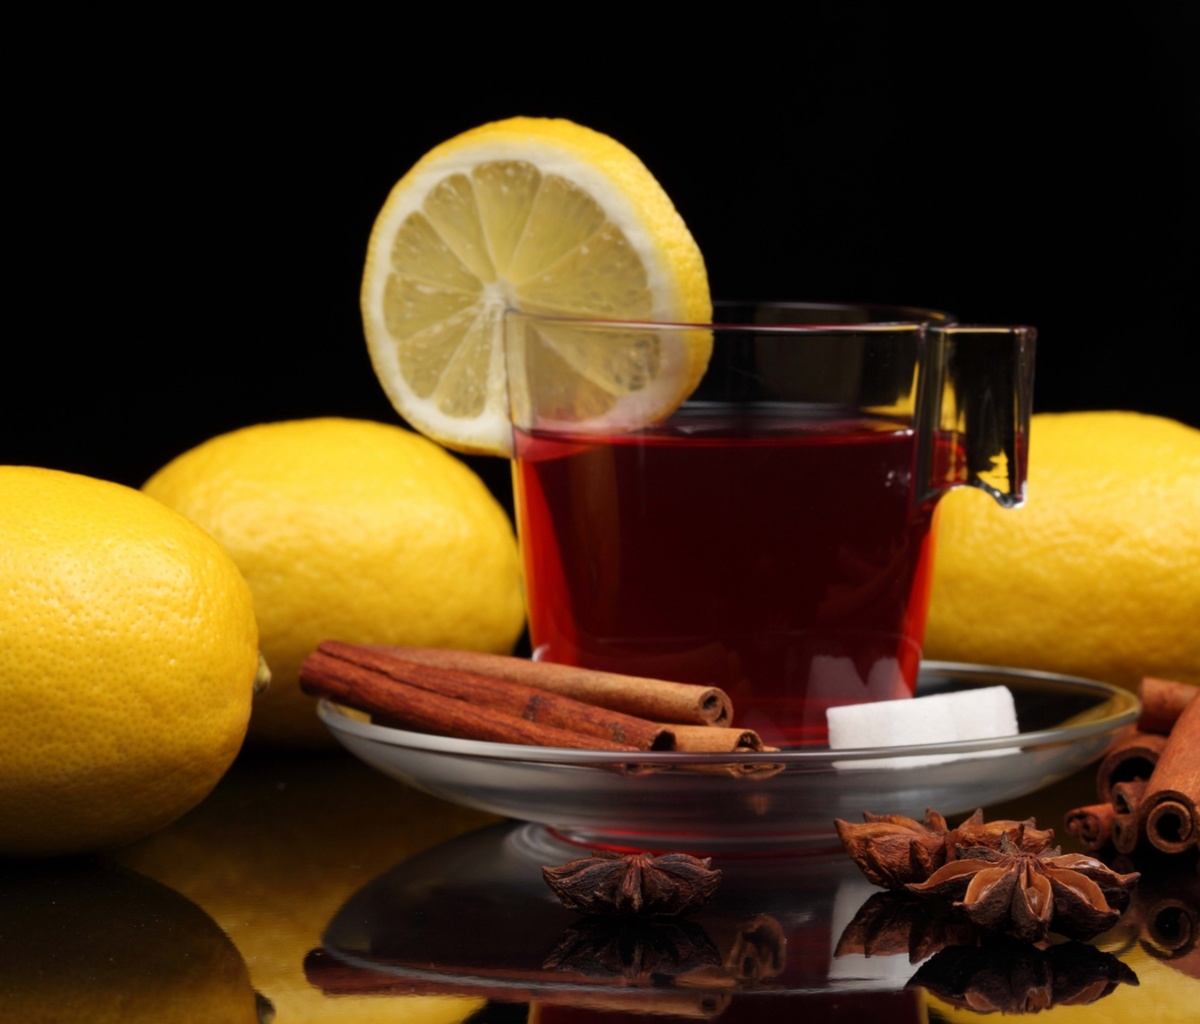 Das Tea with lemon and cinnamon Wallpaper 1200x1024